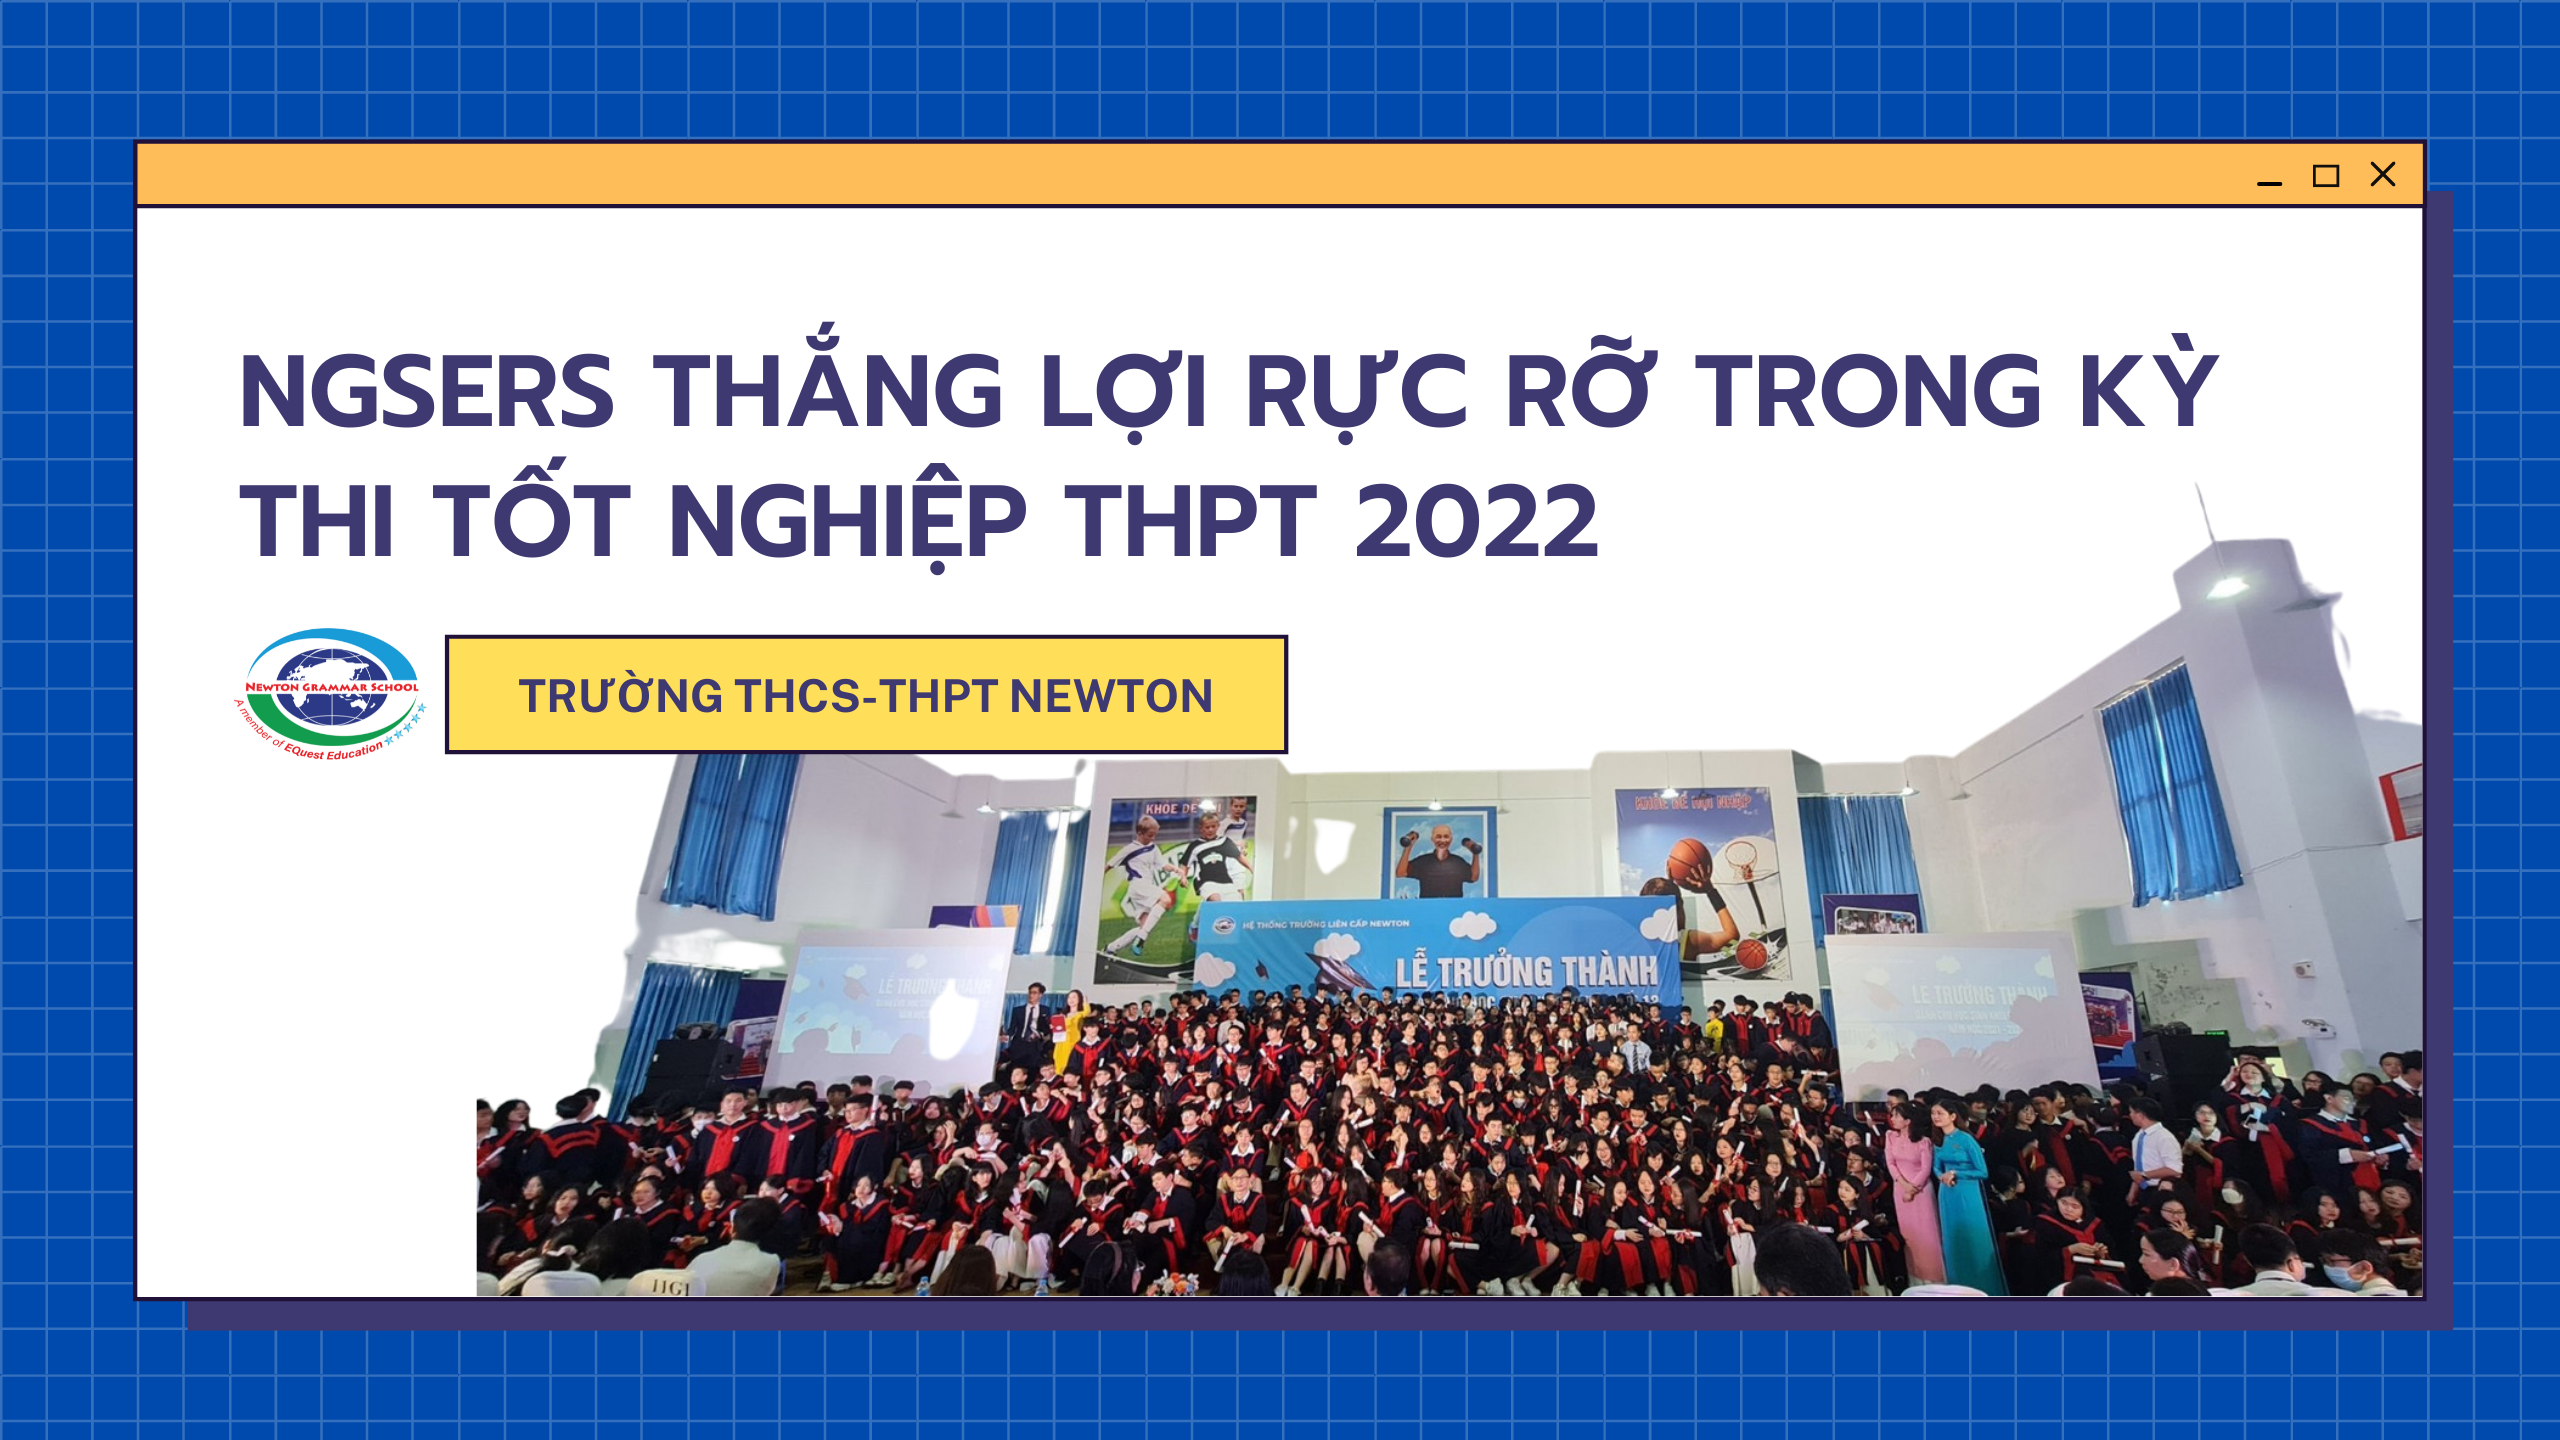 TRƯỜNG THCS- THPT NEWTON THẮNG LỢI RỰC RỠ TRONG KỲ THI TỐT NGHIỆP THPT 2022